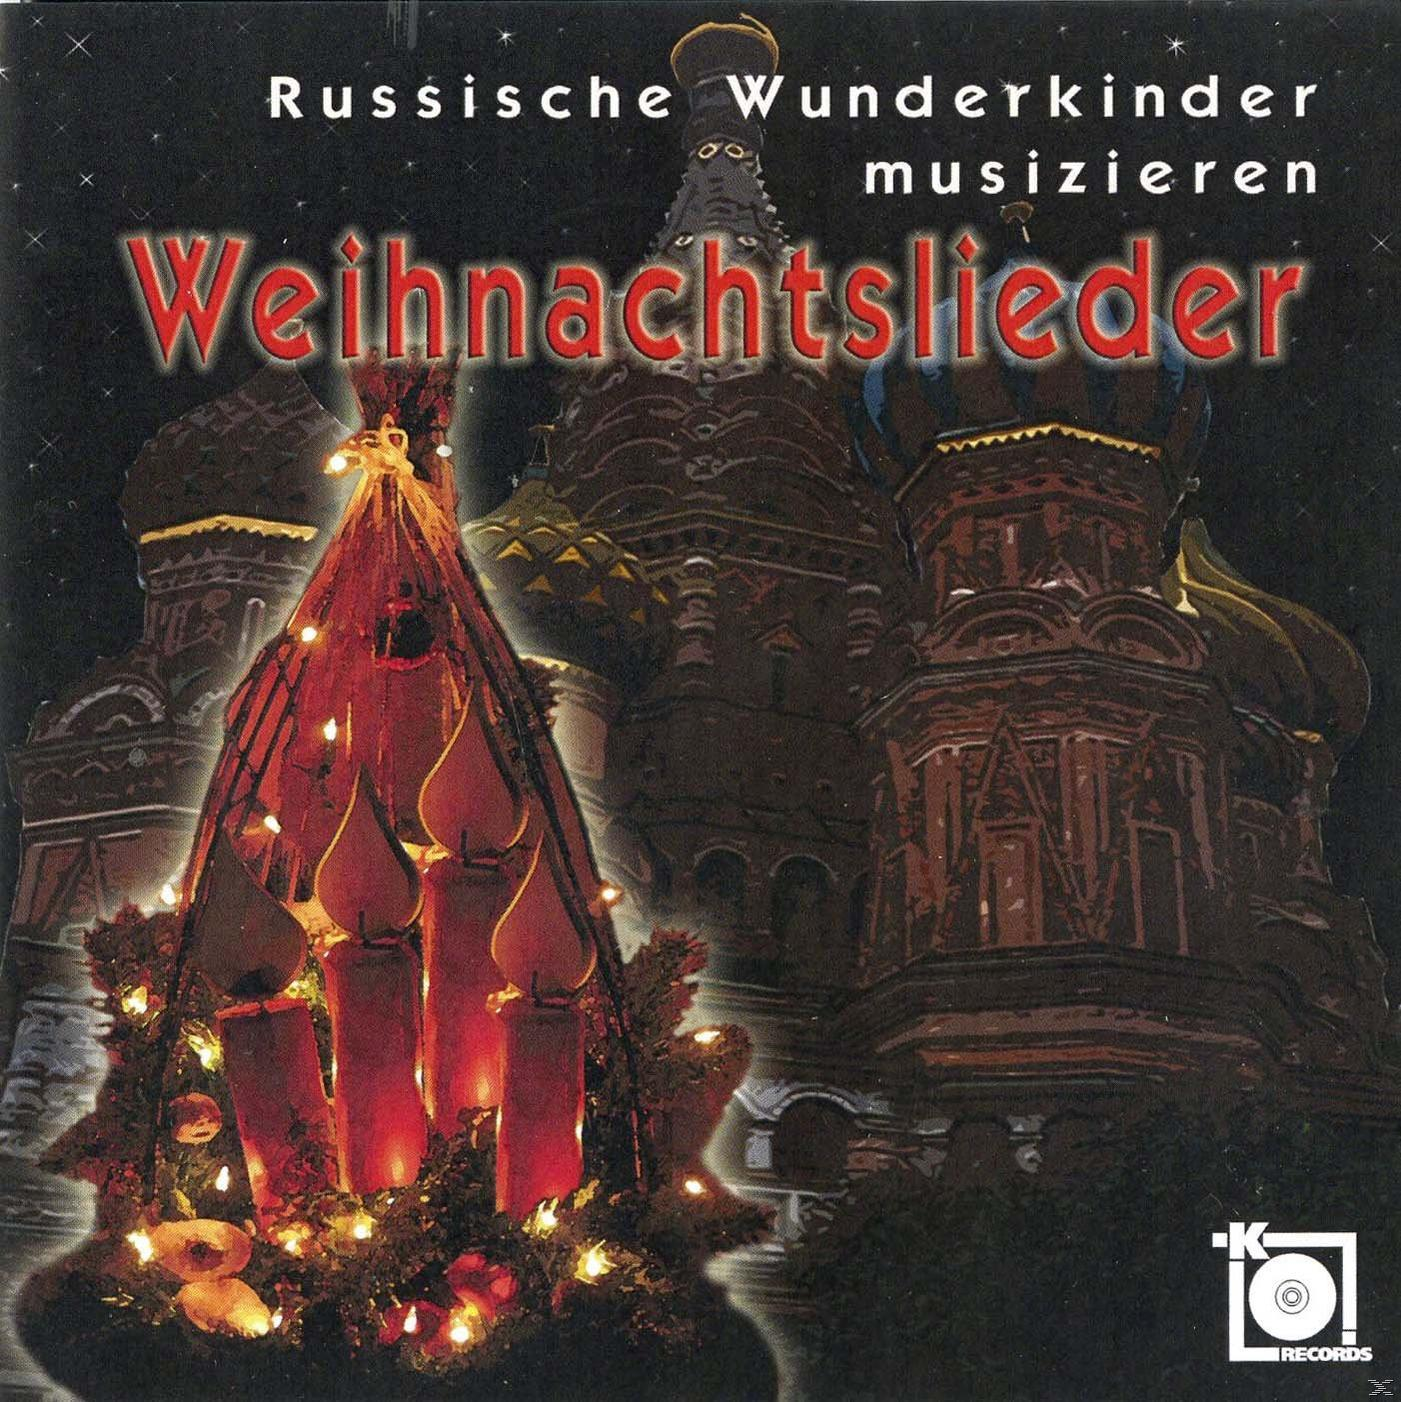 Tschernobyl Wunderkinder - - Weihnachtslieder Russische Für Musizieren (CD) VARIOUS